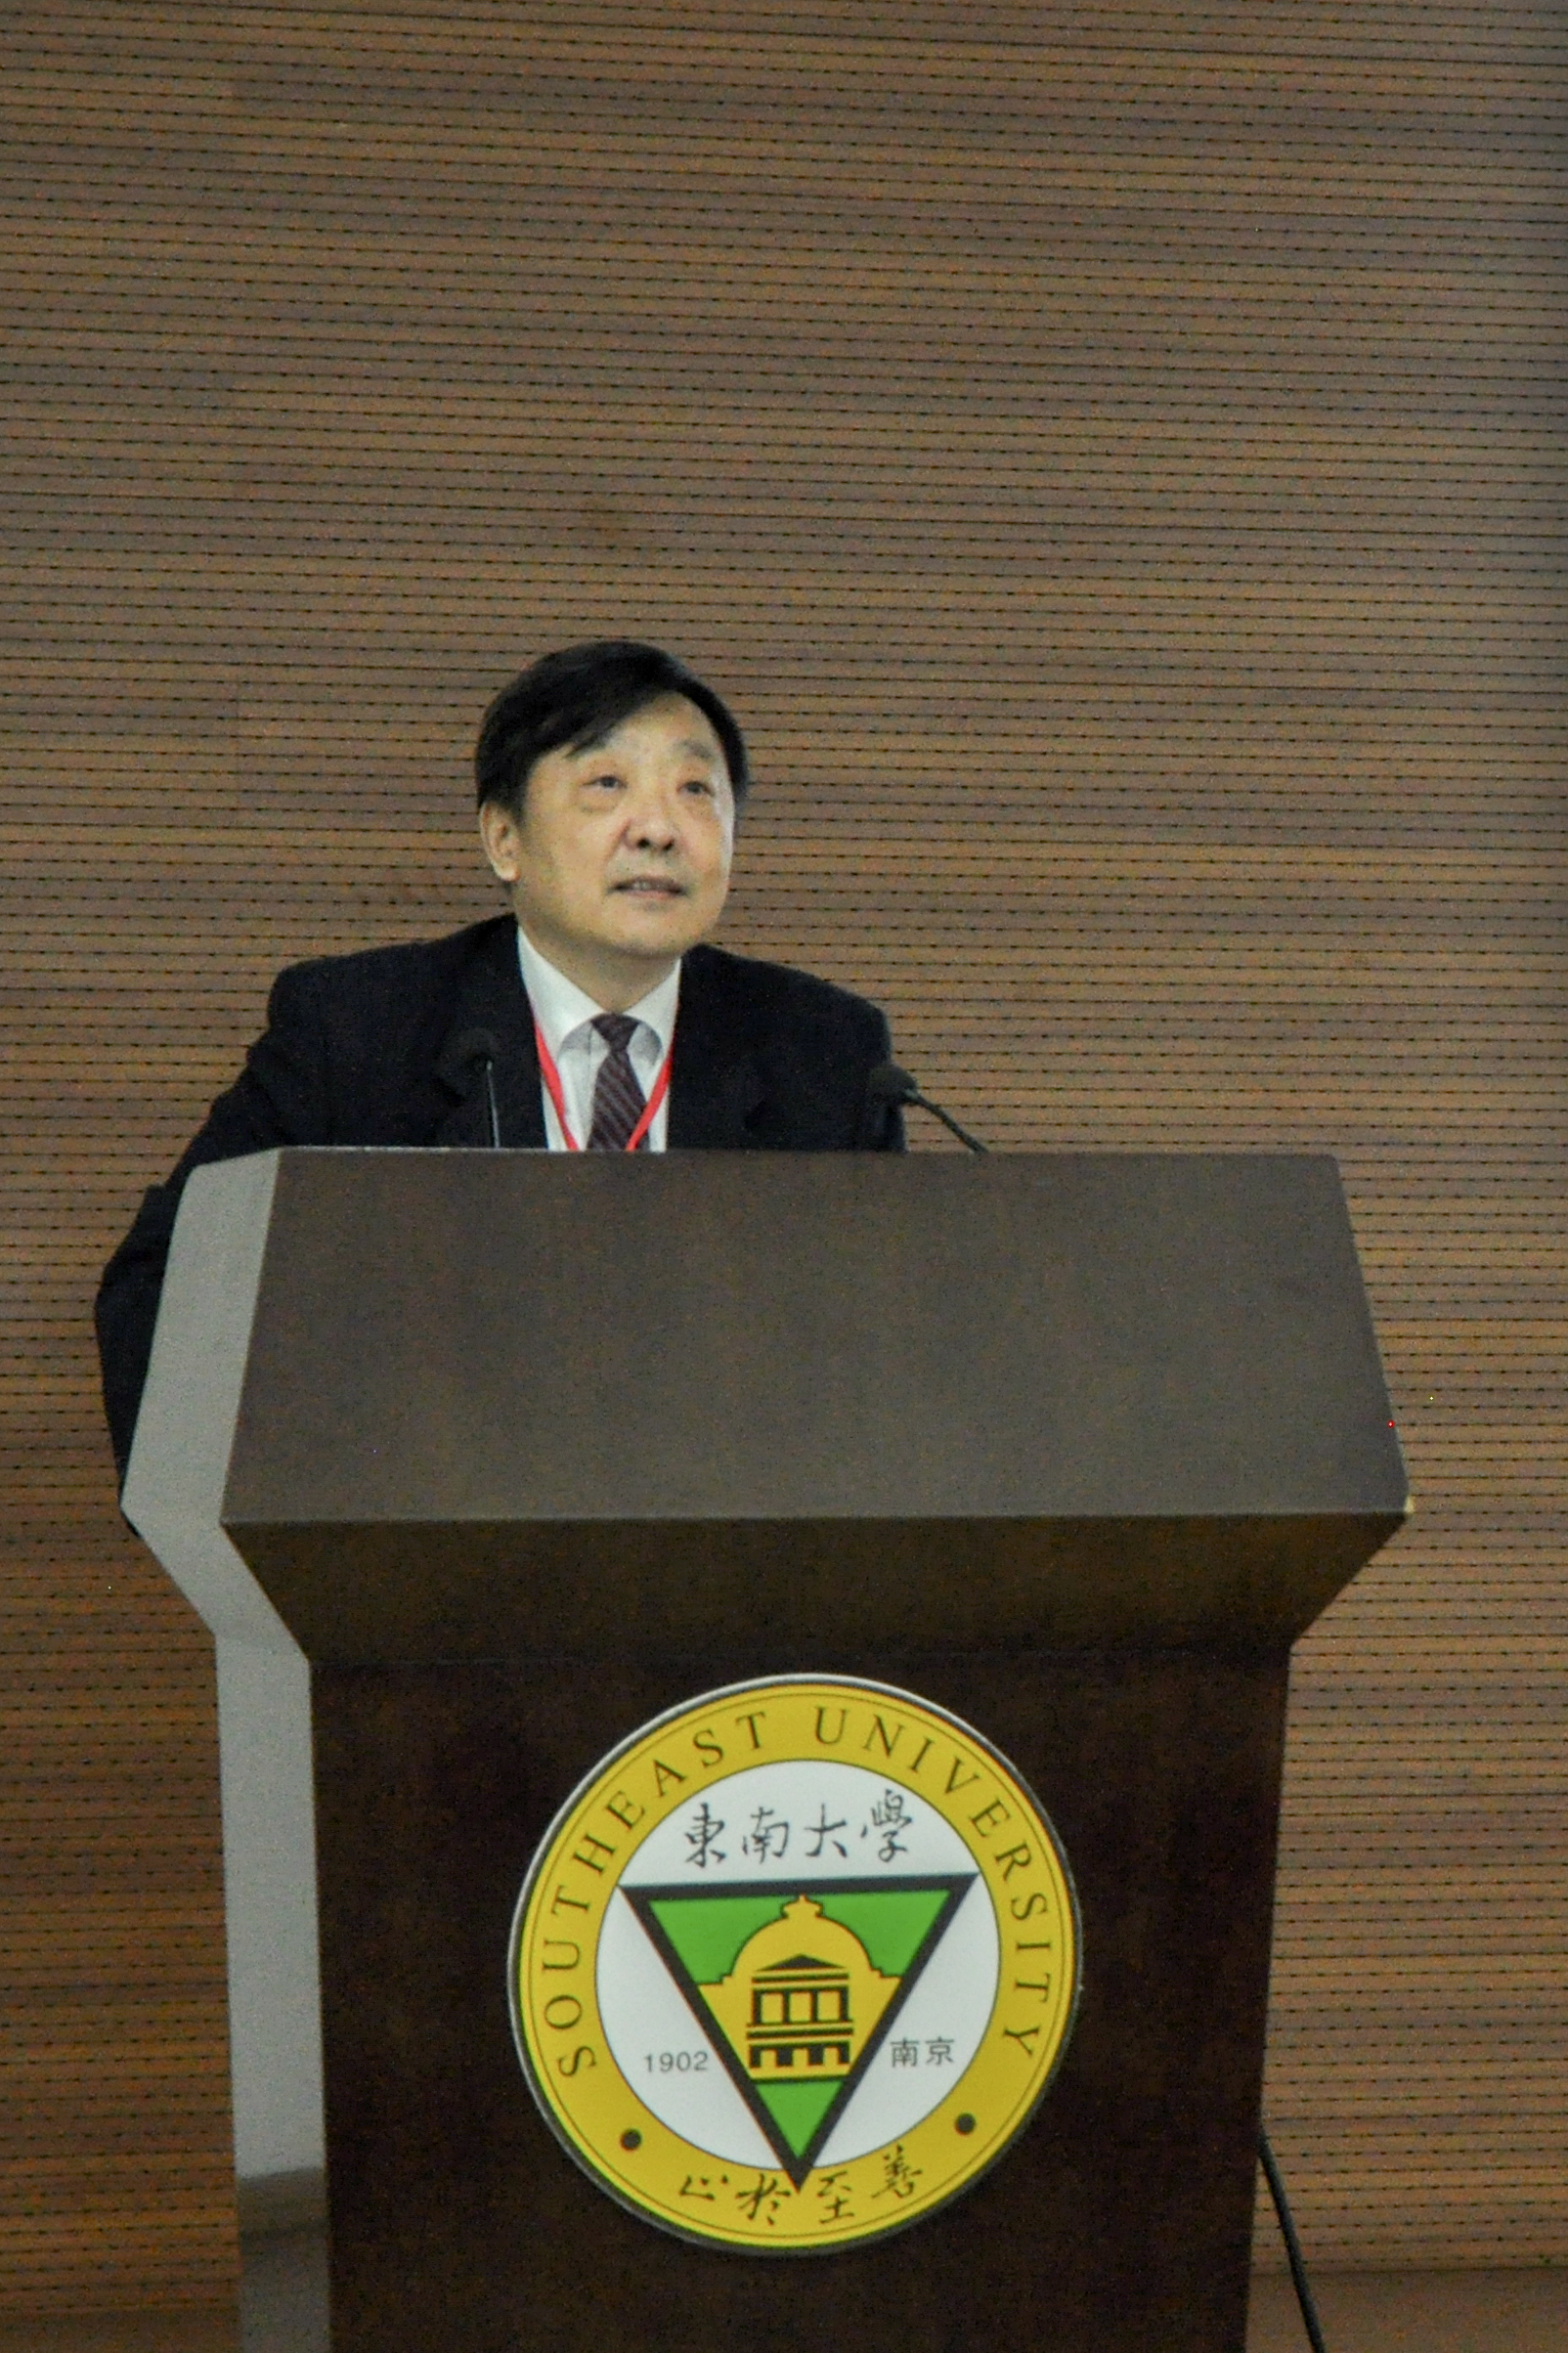 黃僑教授在第七屆全國橋隧學科建設研討會上作報告